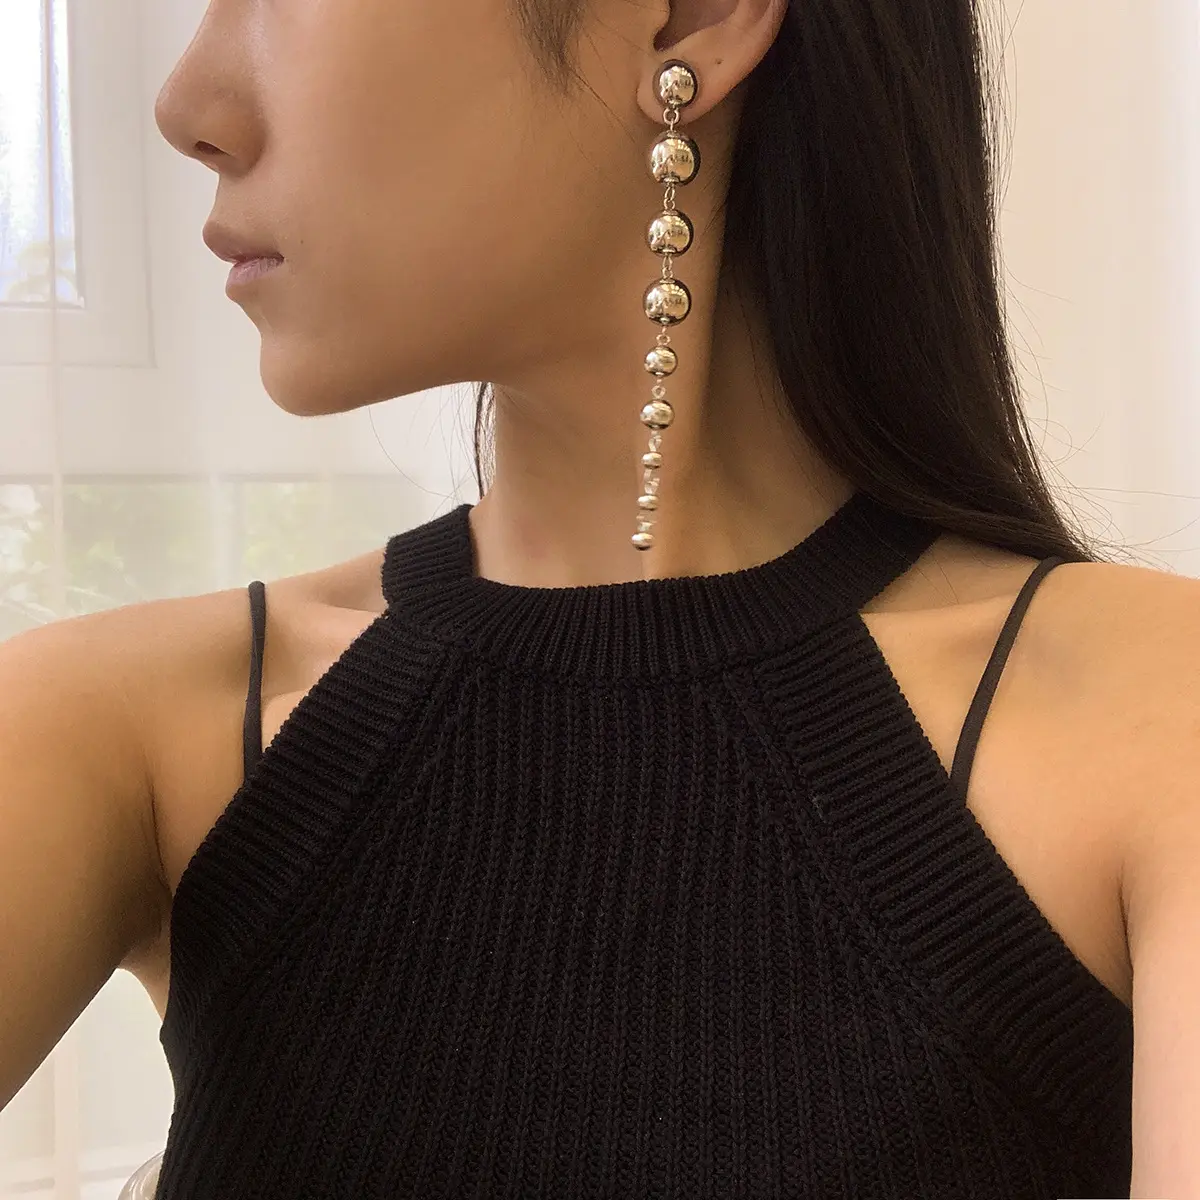 Fashion Jewelry Women's Personality Geometric Size Beads Long Earrings Metal Beaded Earrings